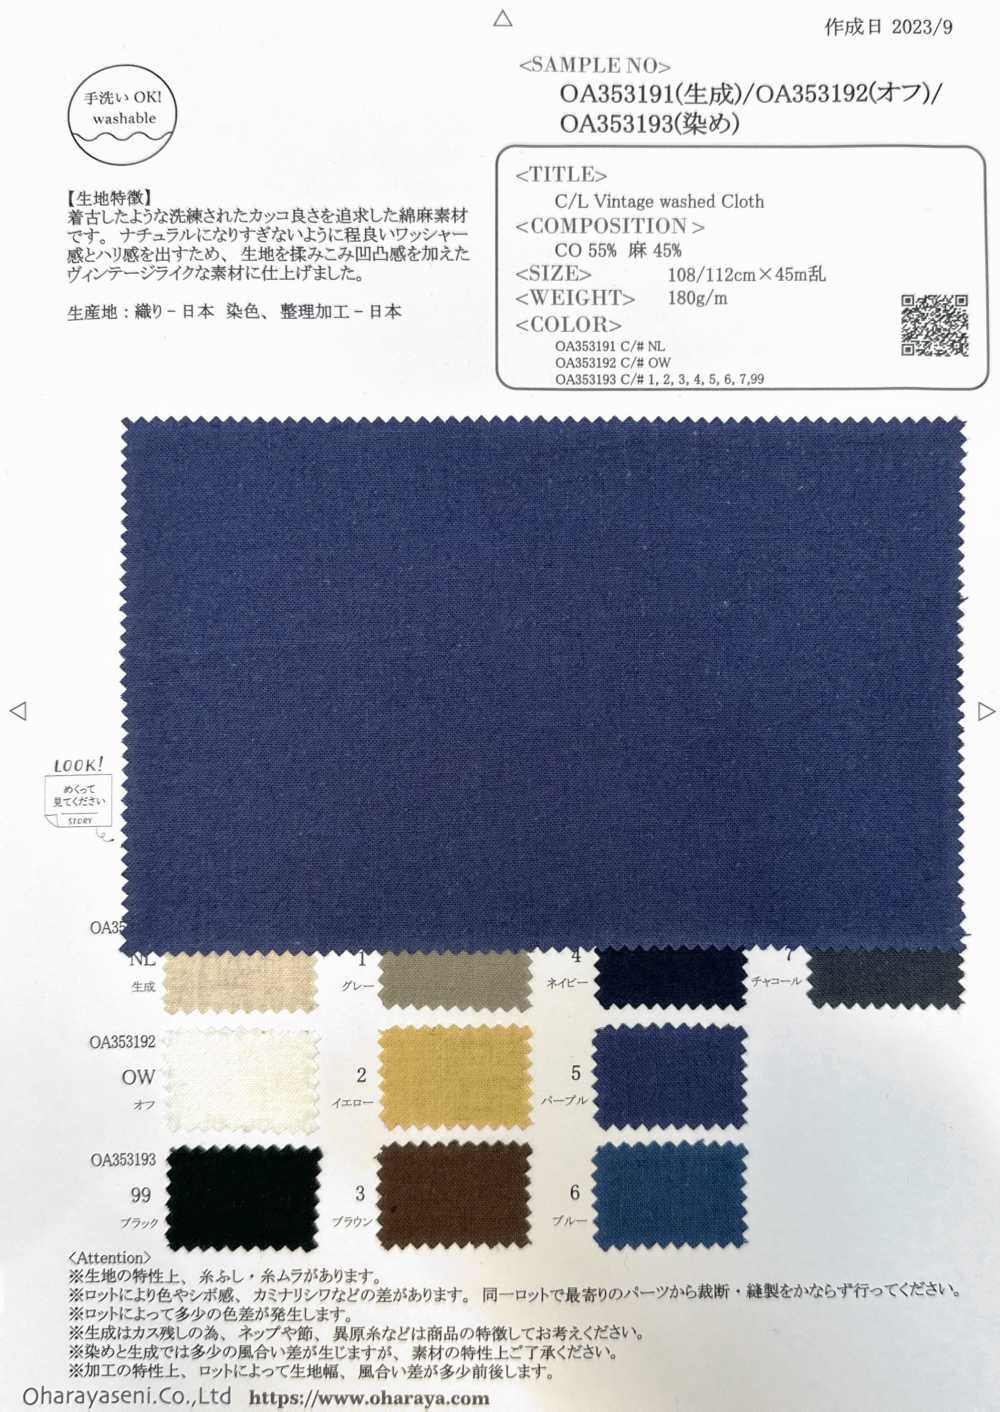 OA353191 C/L Vintage Washed Cloth[Textile / Fabric] Oharayaseni